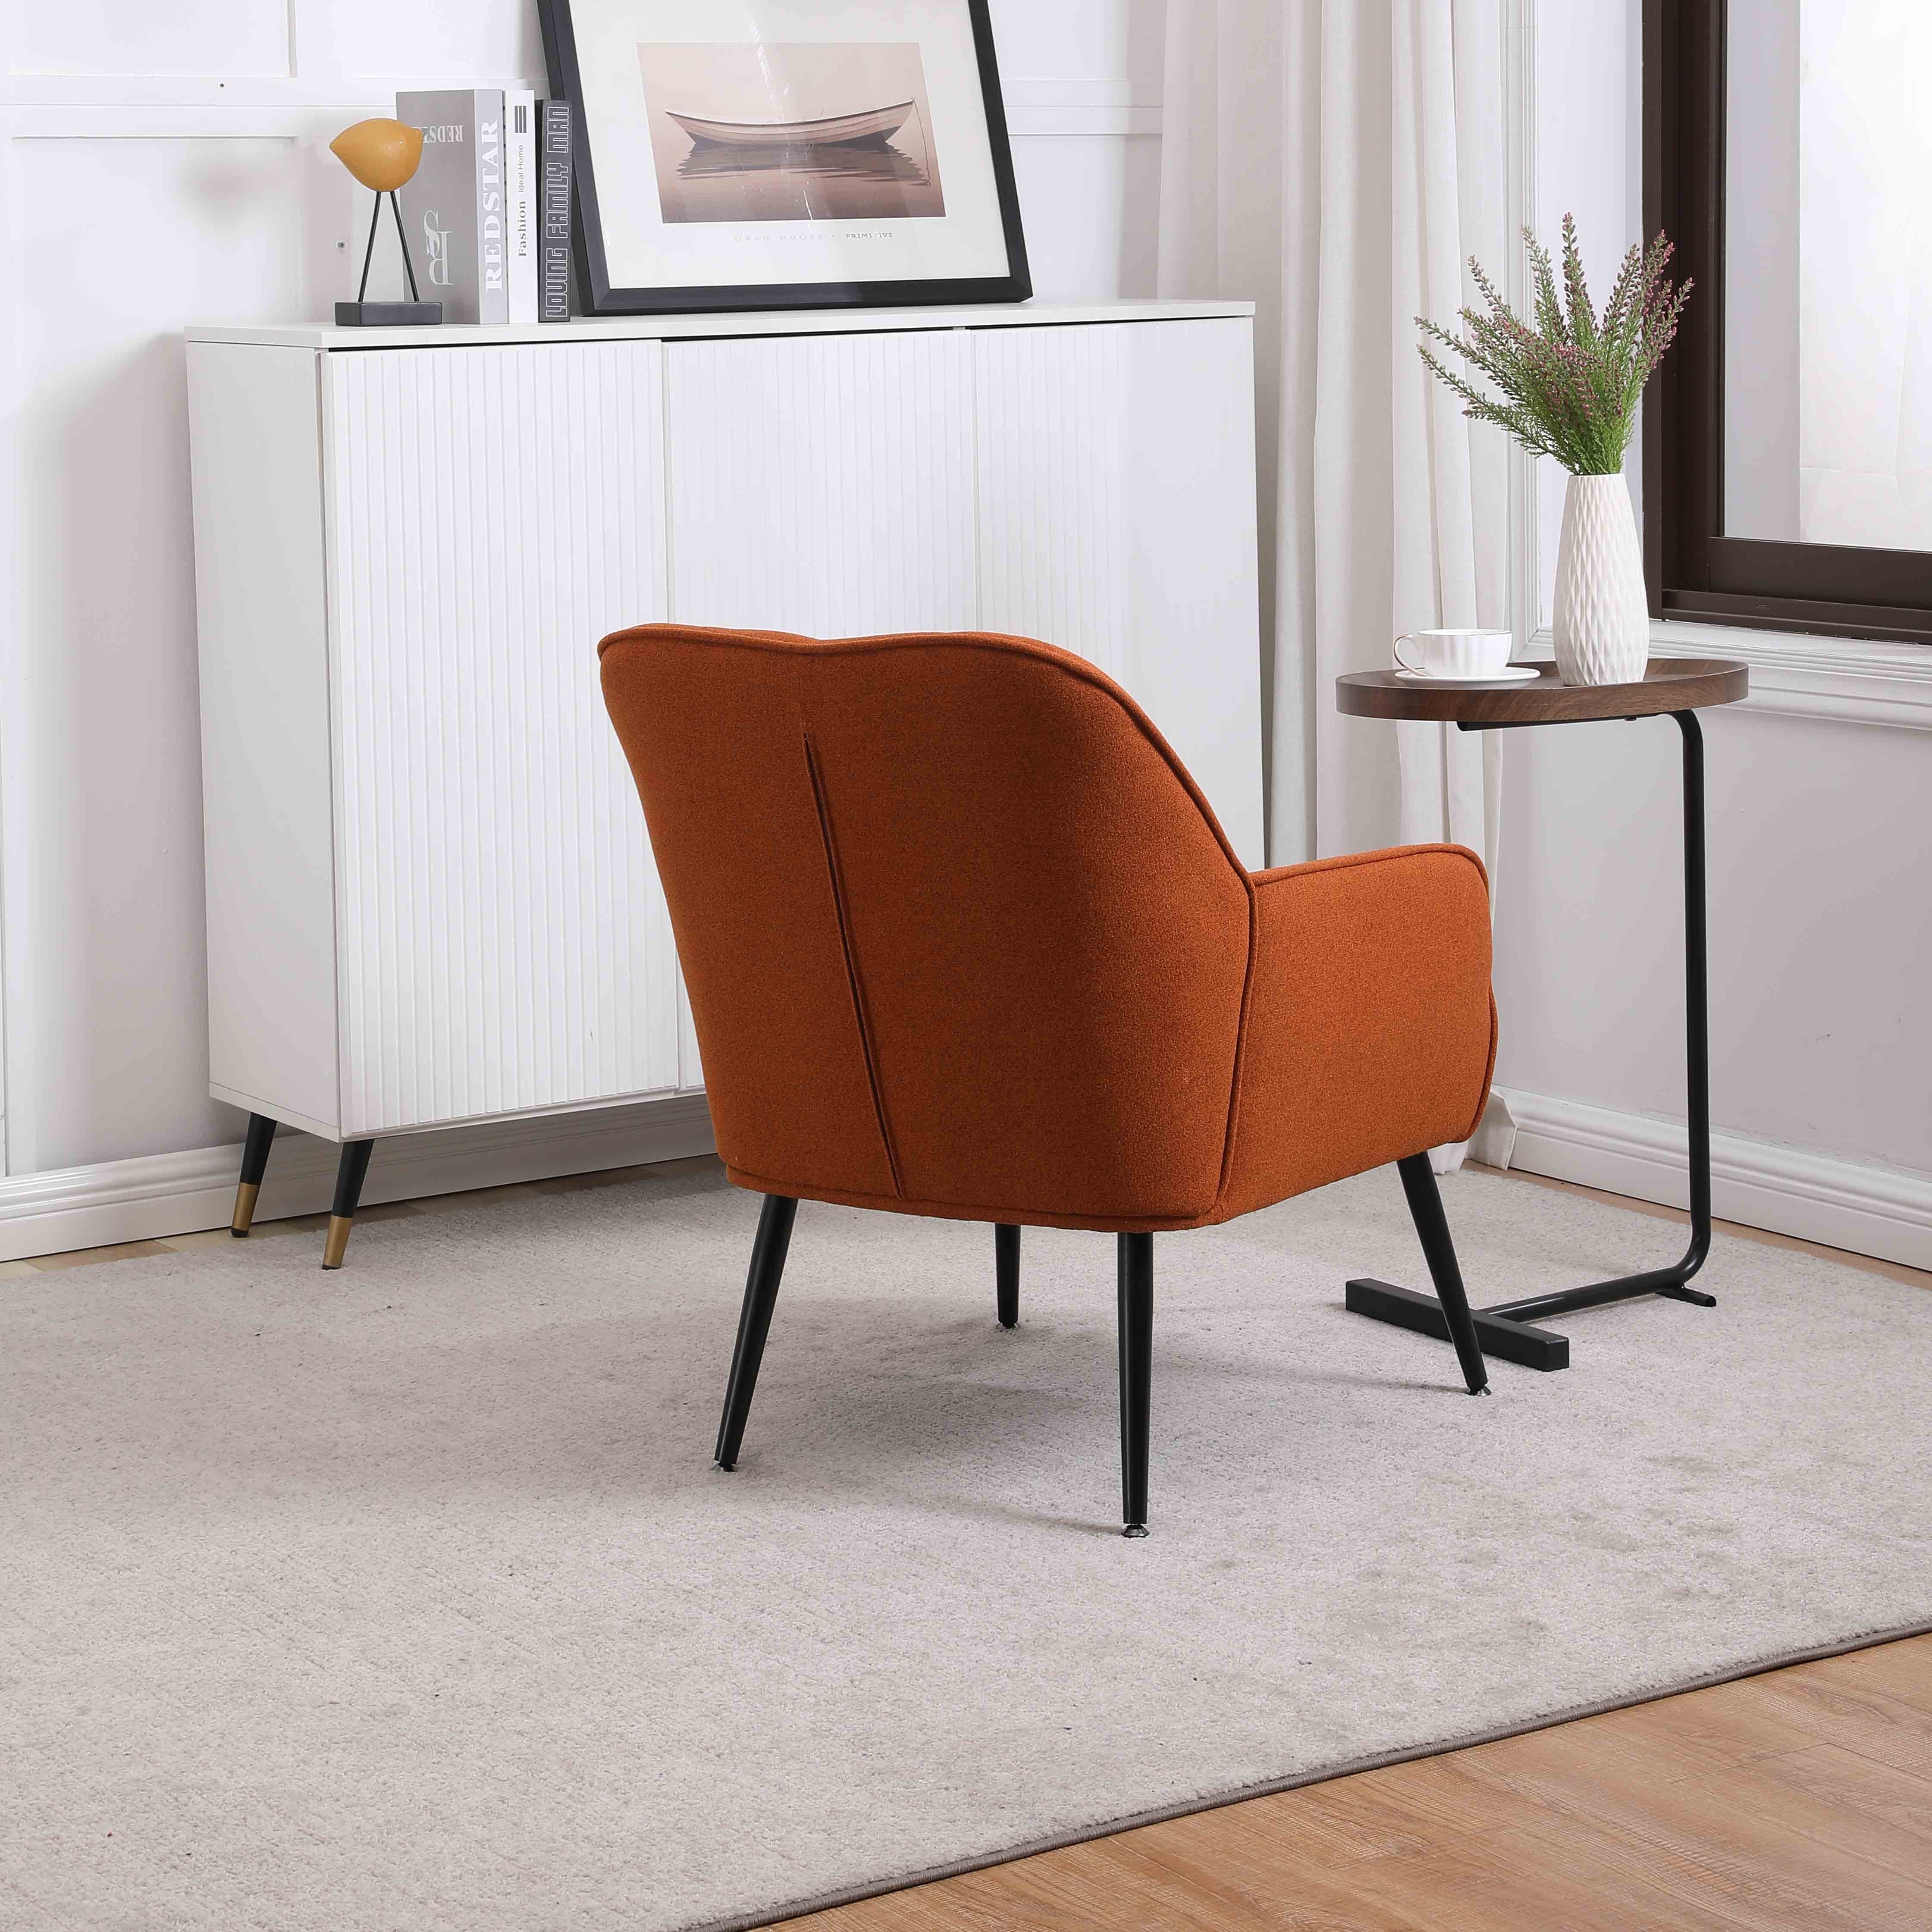 REDOM Loungesessel Relaxsessel Einzelsessel, Polstersessel, Einzelsofa Metallbeinen orange Freizeit mit Stuhl Gepolsterte Kaffee Stuhl), (Büro Fernsehsessel